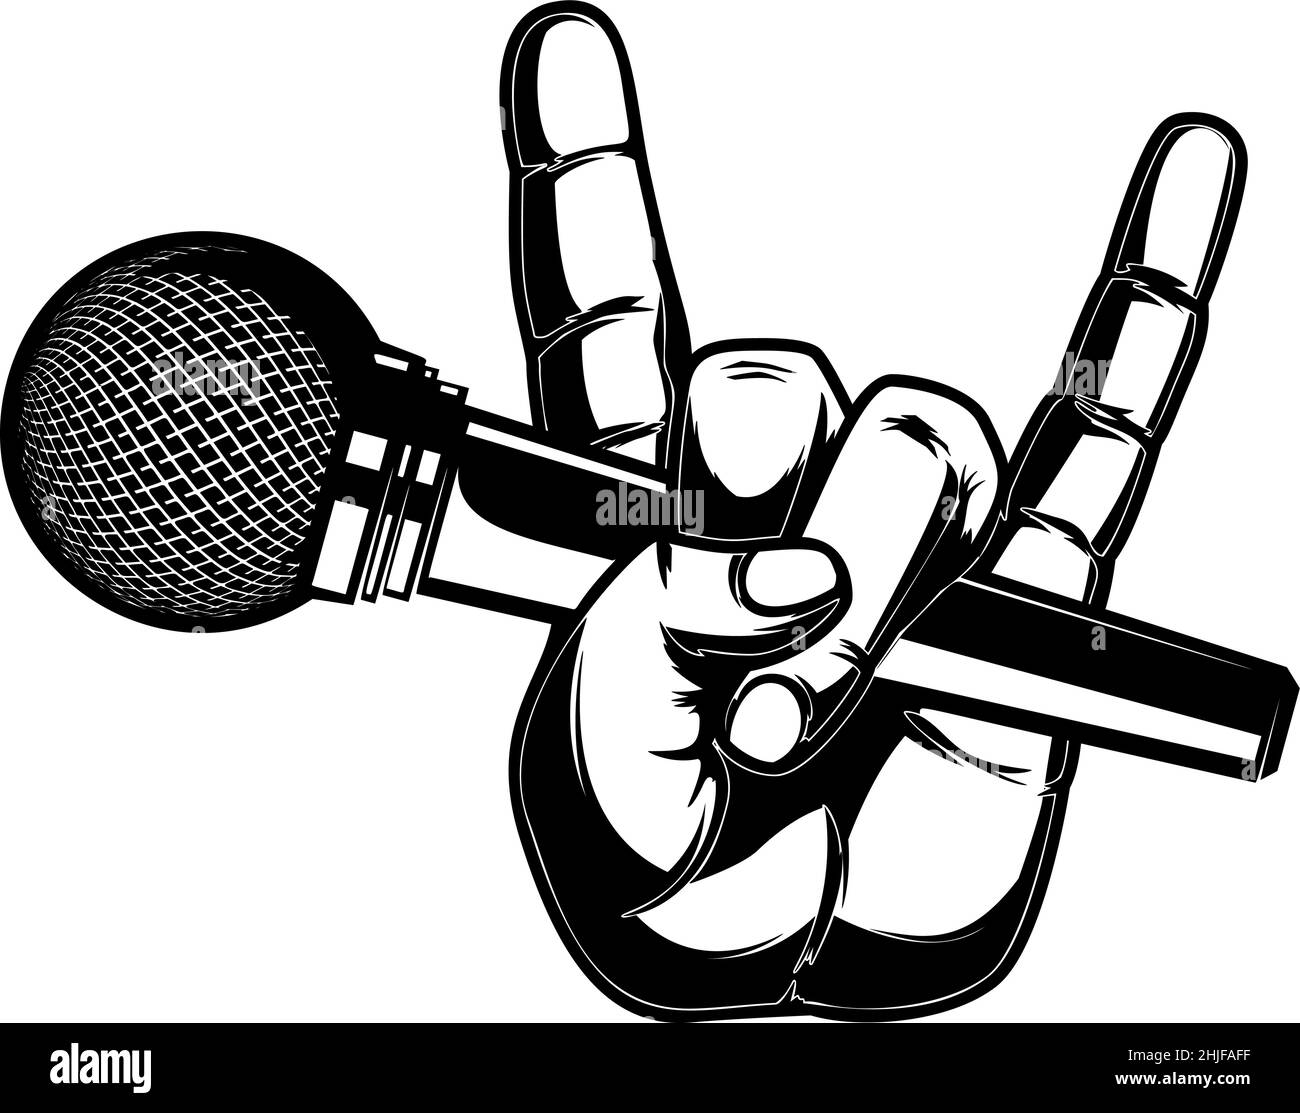 Main humaine avec microphone.Élément de design pour affiche, logo, étiquette, t-shirt.Illustration vectorielle Illustration de Vecteur